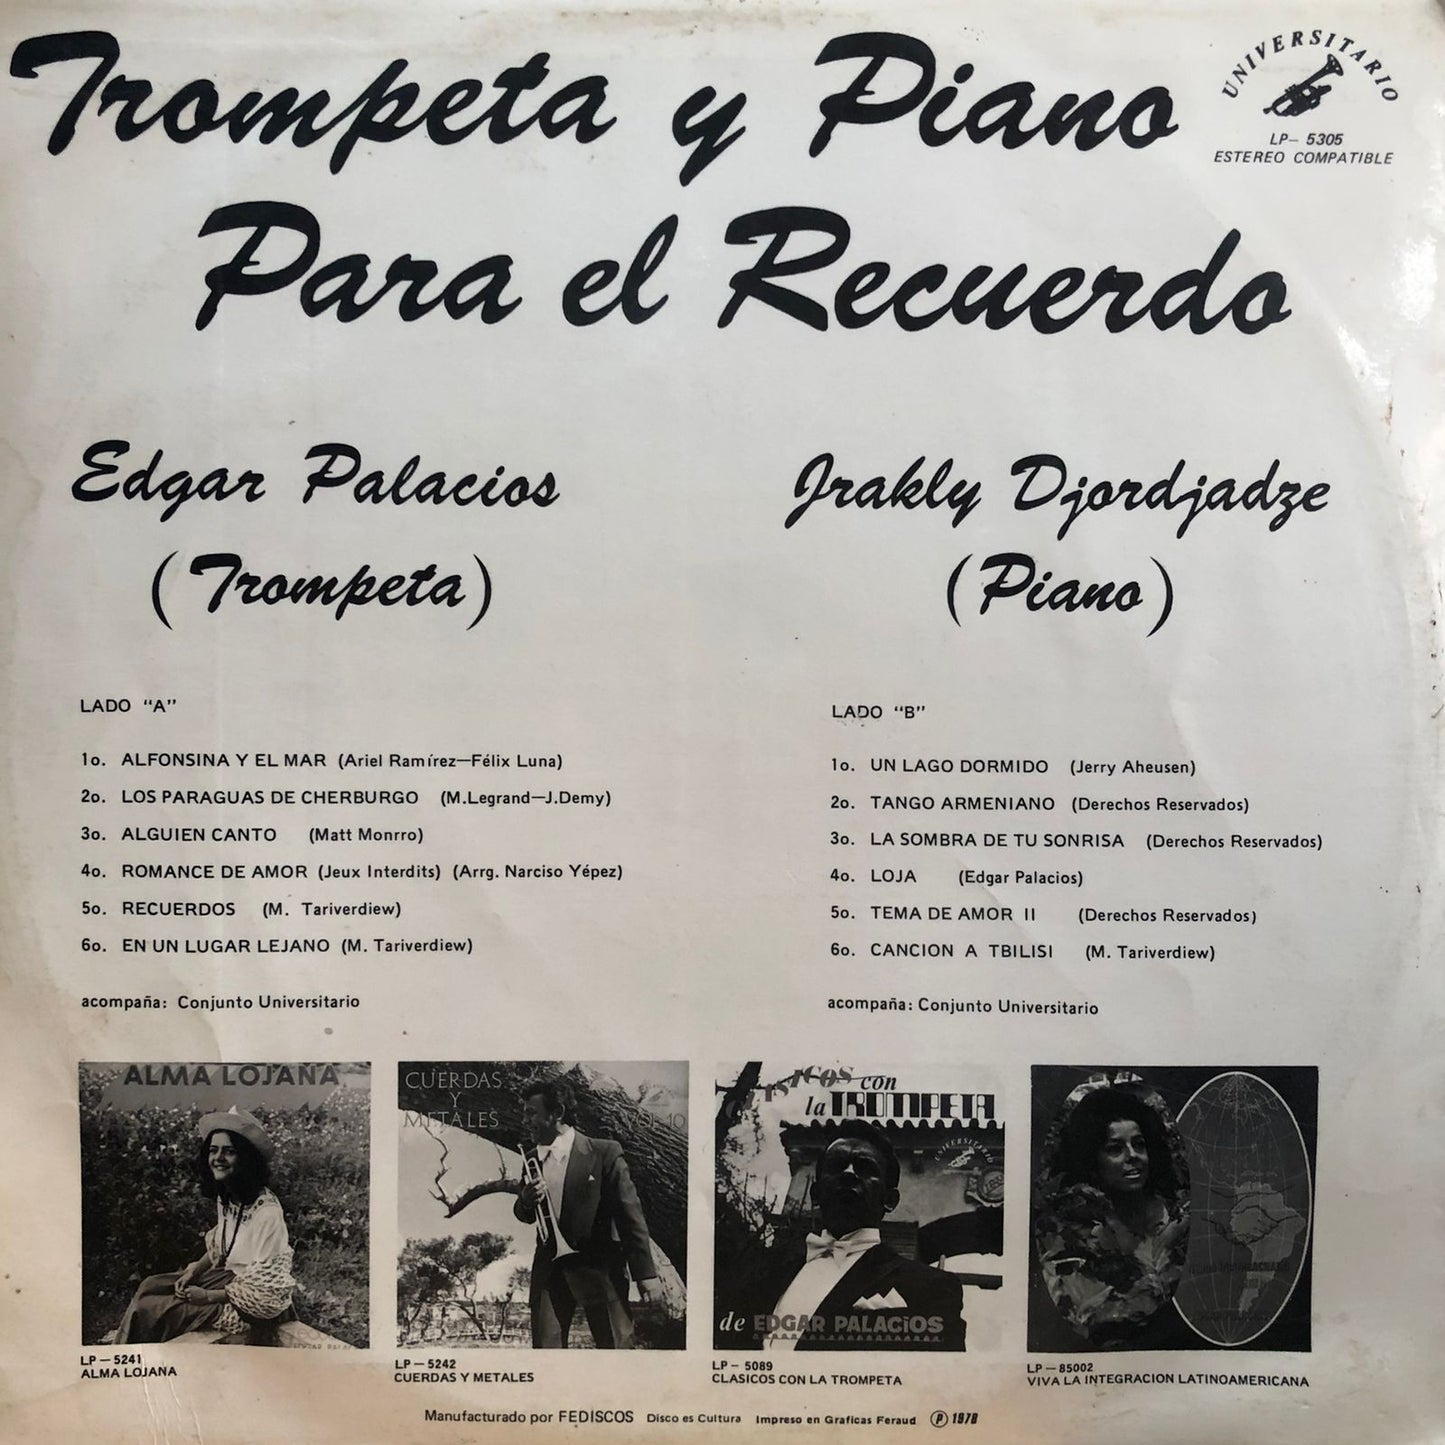 EDGAR PALACIOS Y JRAKLY DJORDJADZE - TROMPETA Y PIANO LP